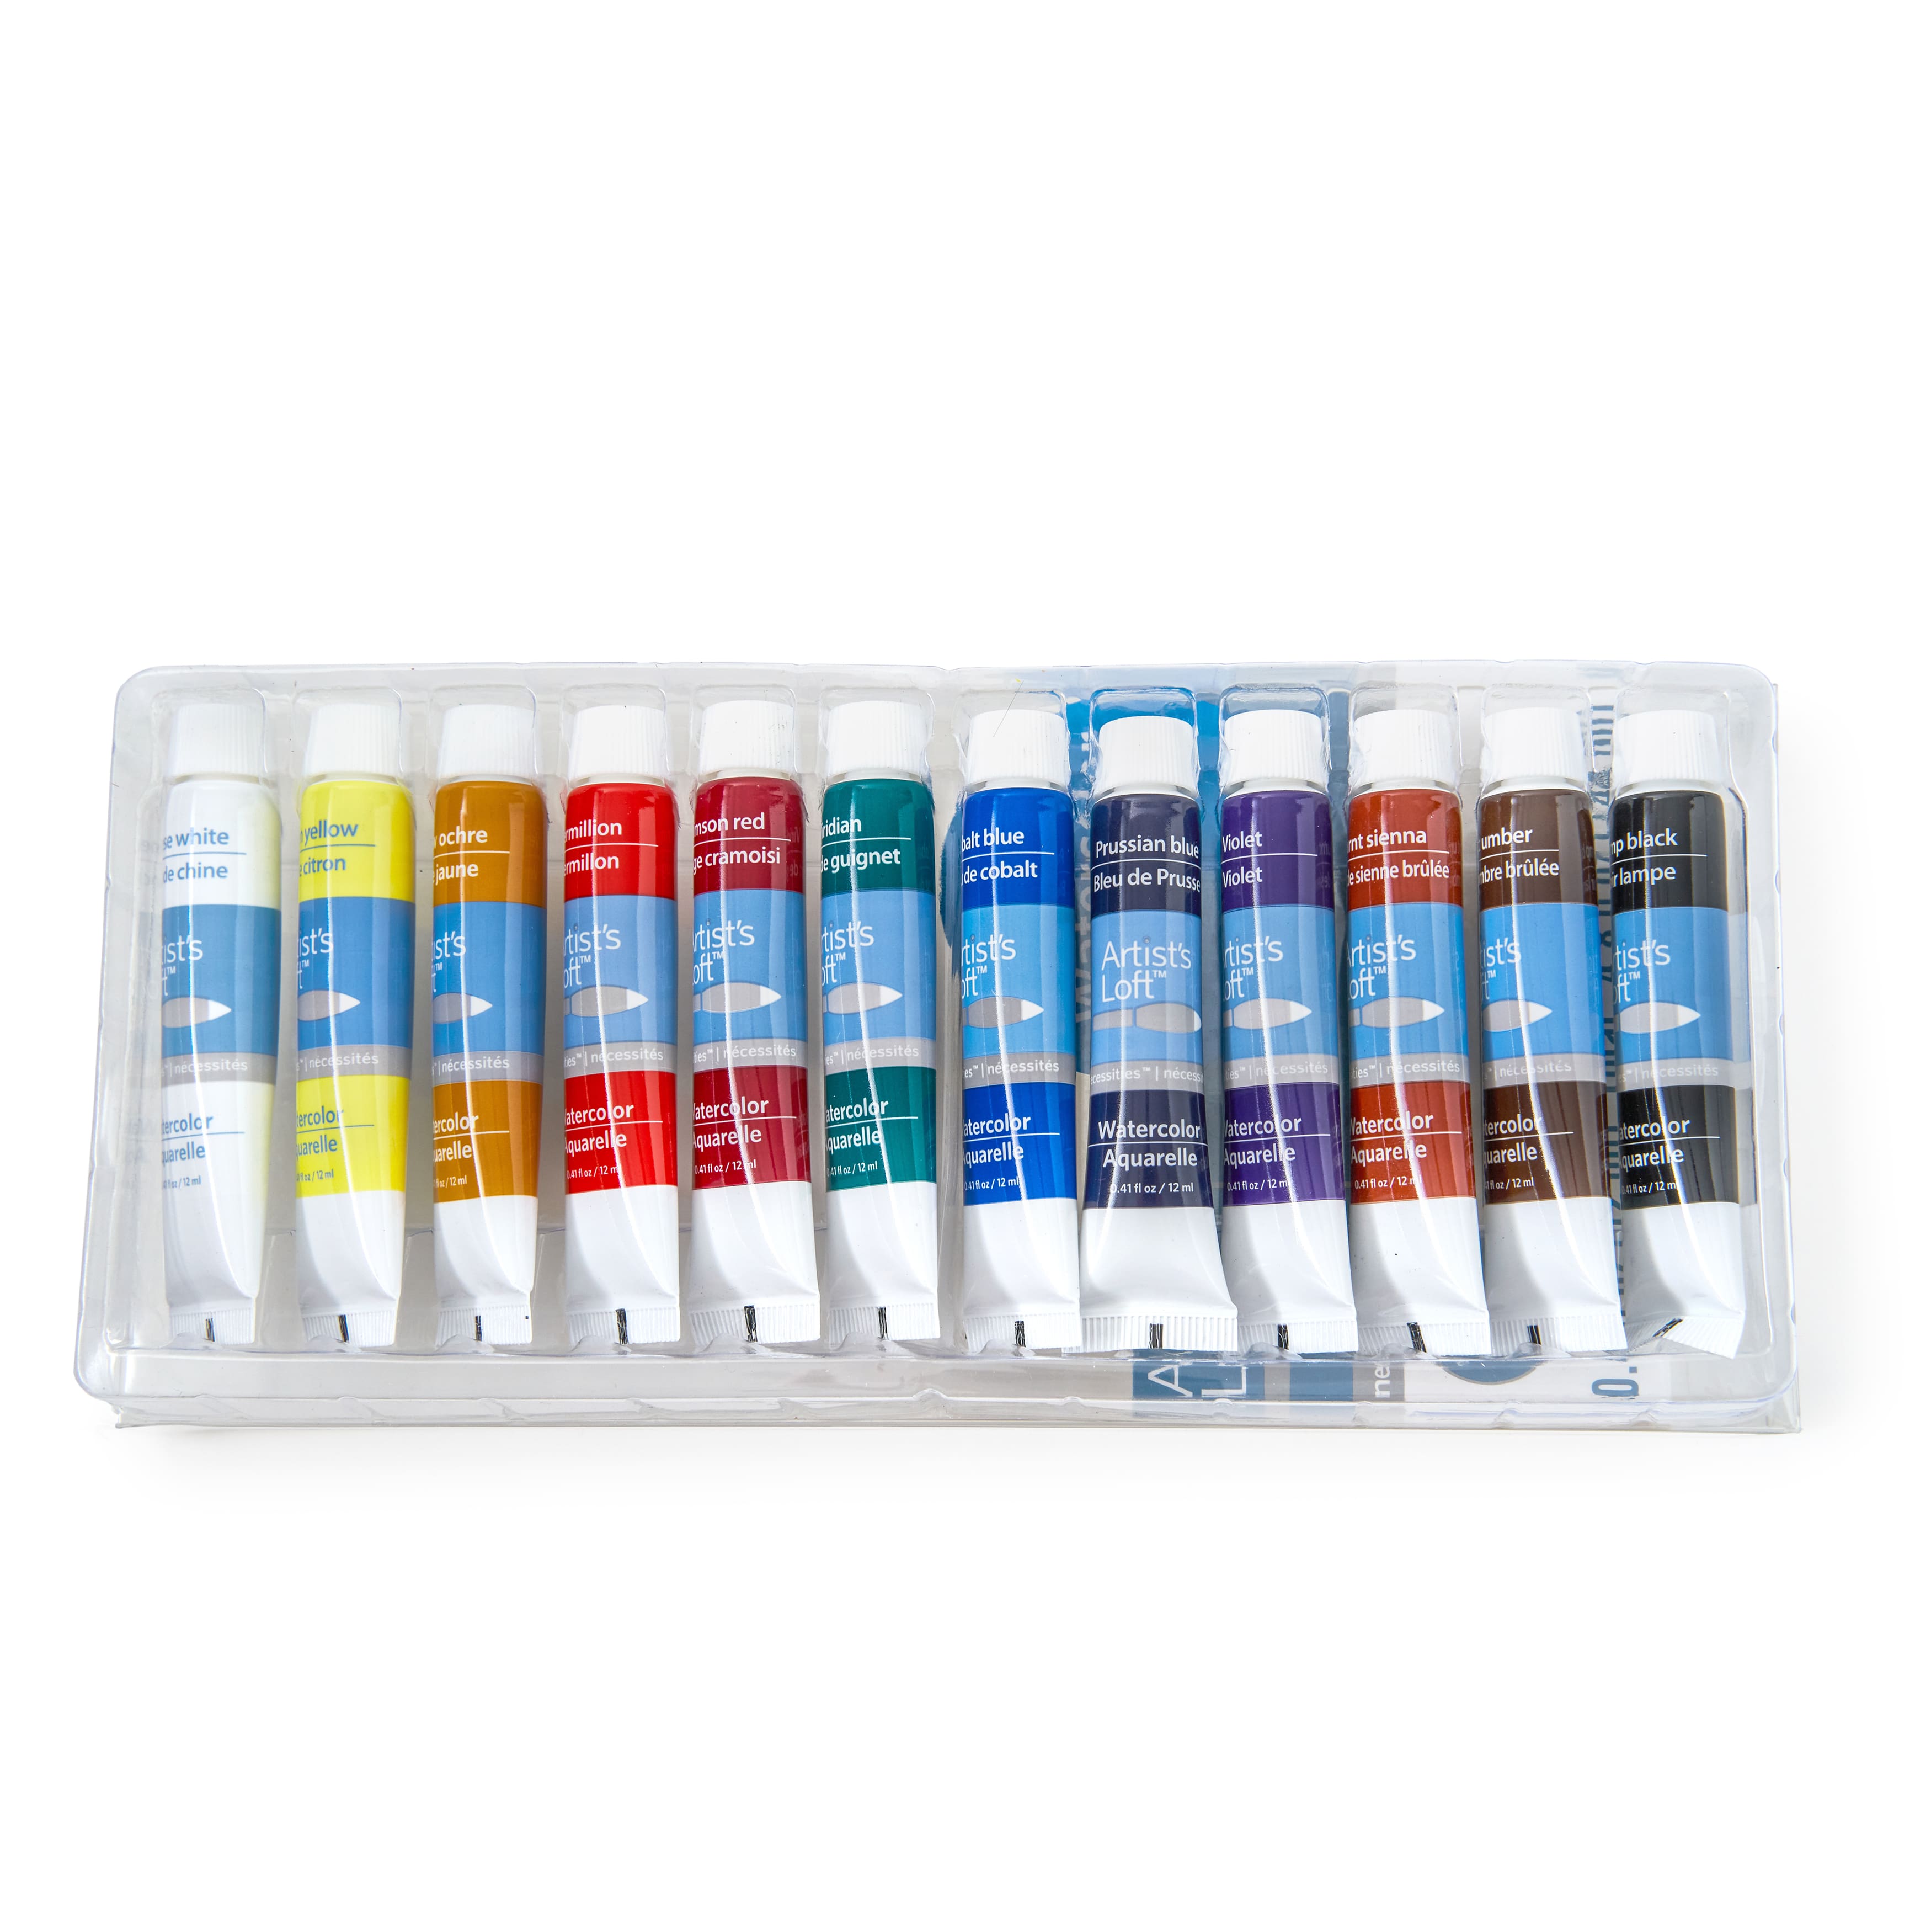 16 Color Watercolor Paint Strips - Basic Supplies - 12 Pieces